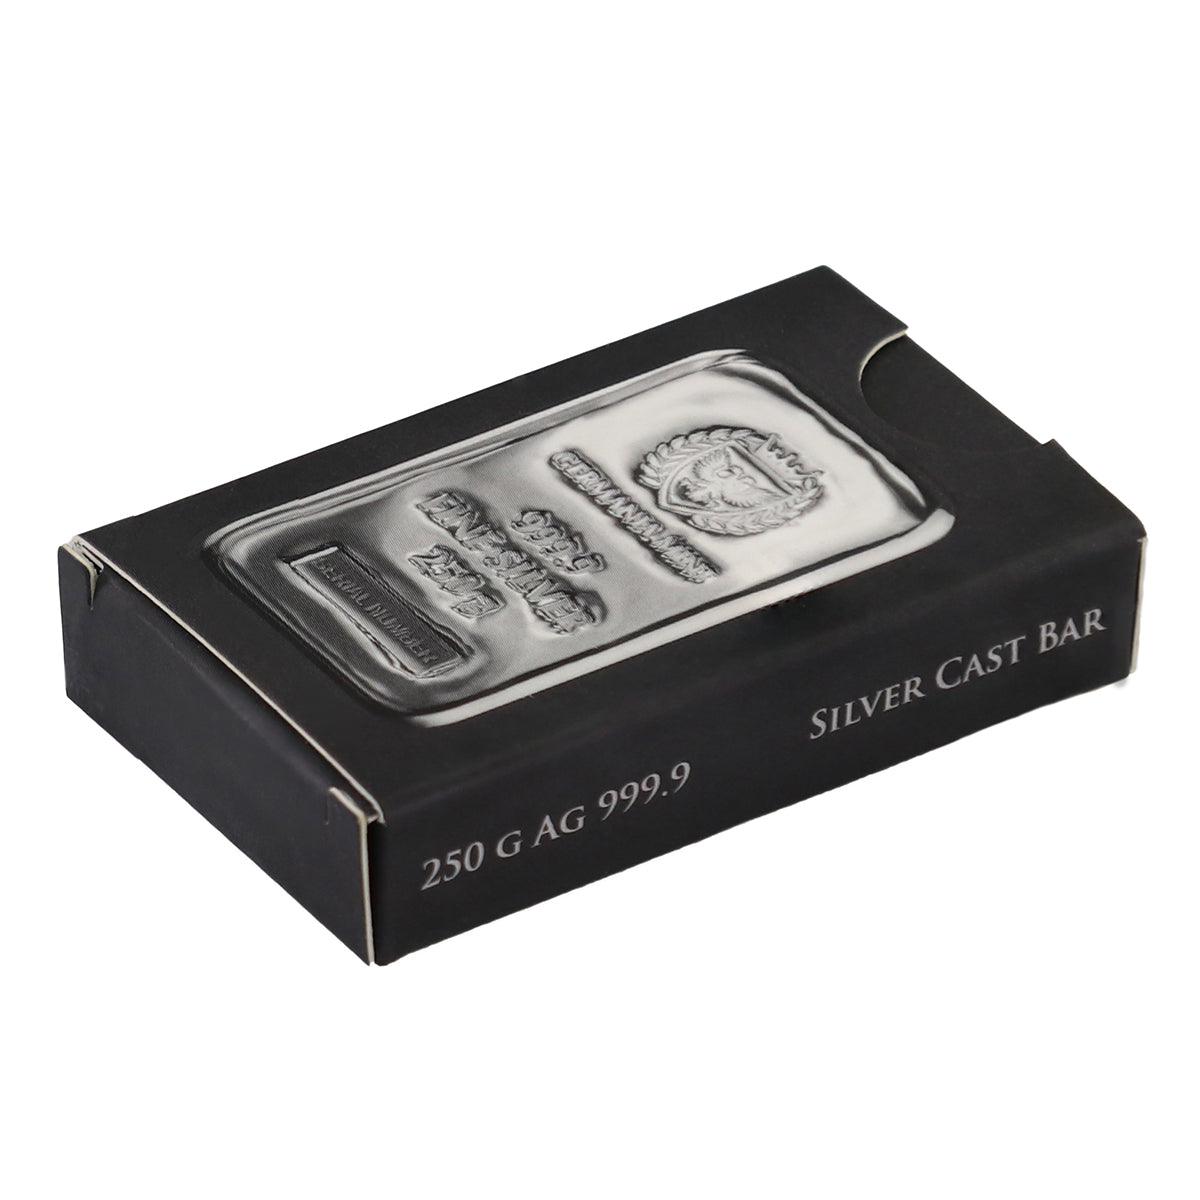 Germania Mint 250 g Silver Bar